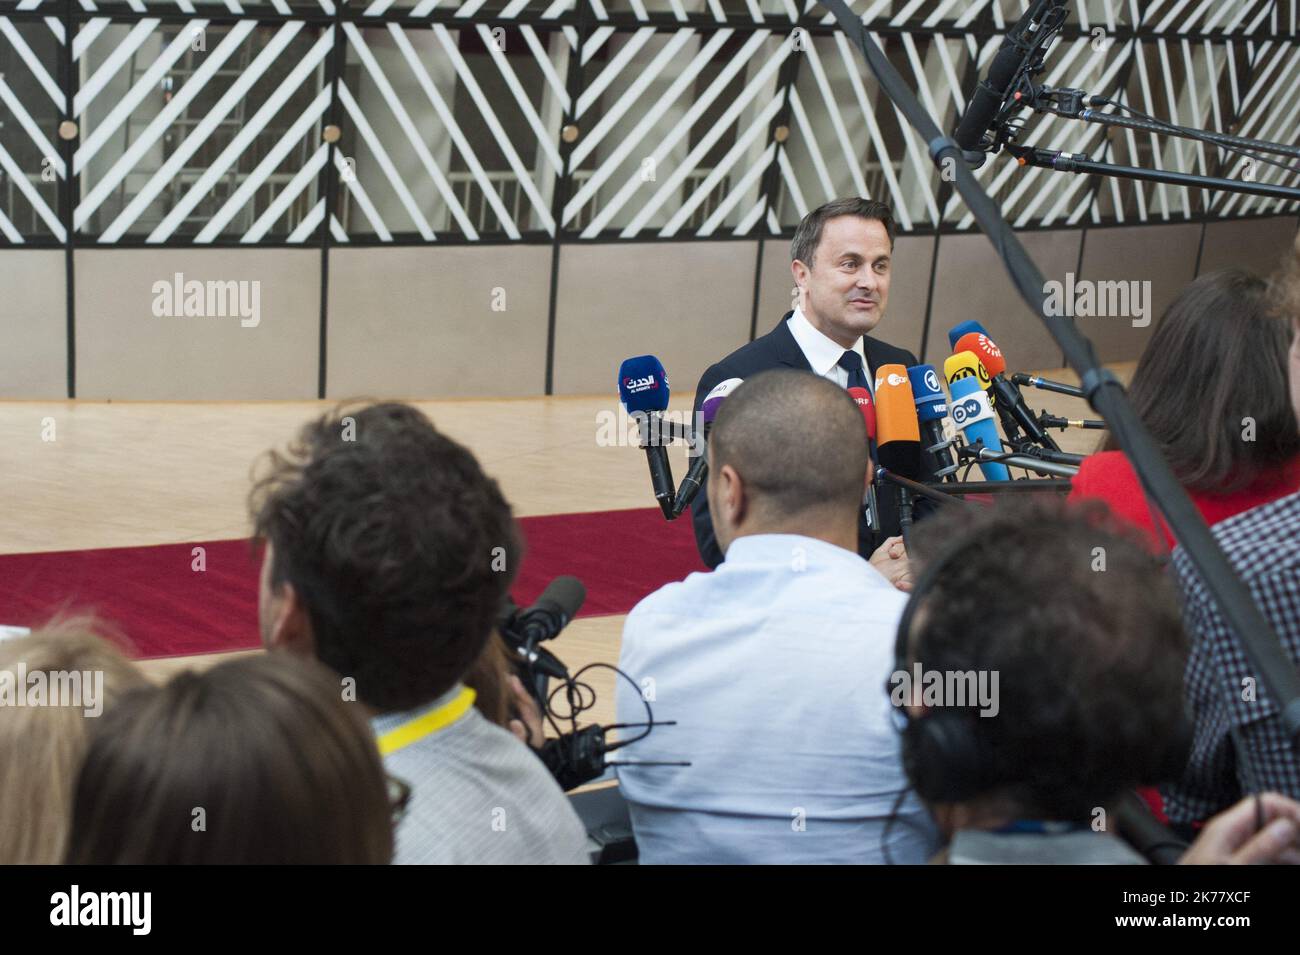 Arrivo del primo ministro lussemburghese Xavier Bettel al vertice europeo del 20 giugno 2019. Foto Stock